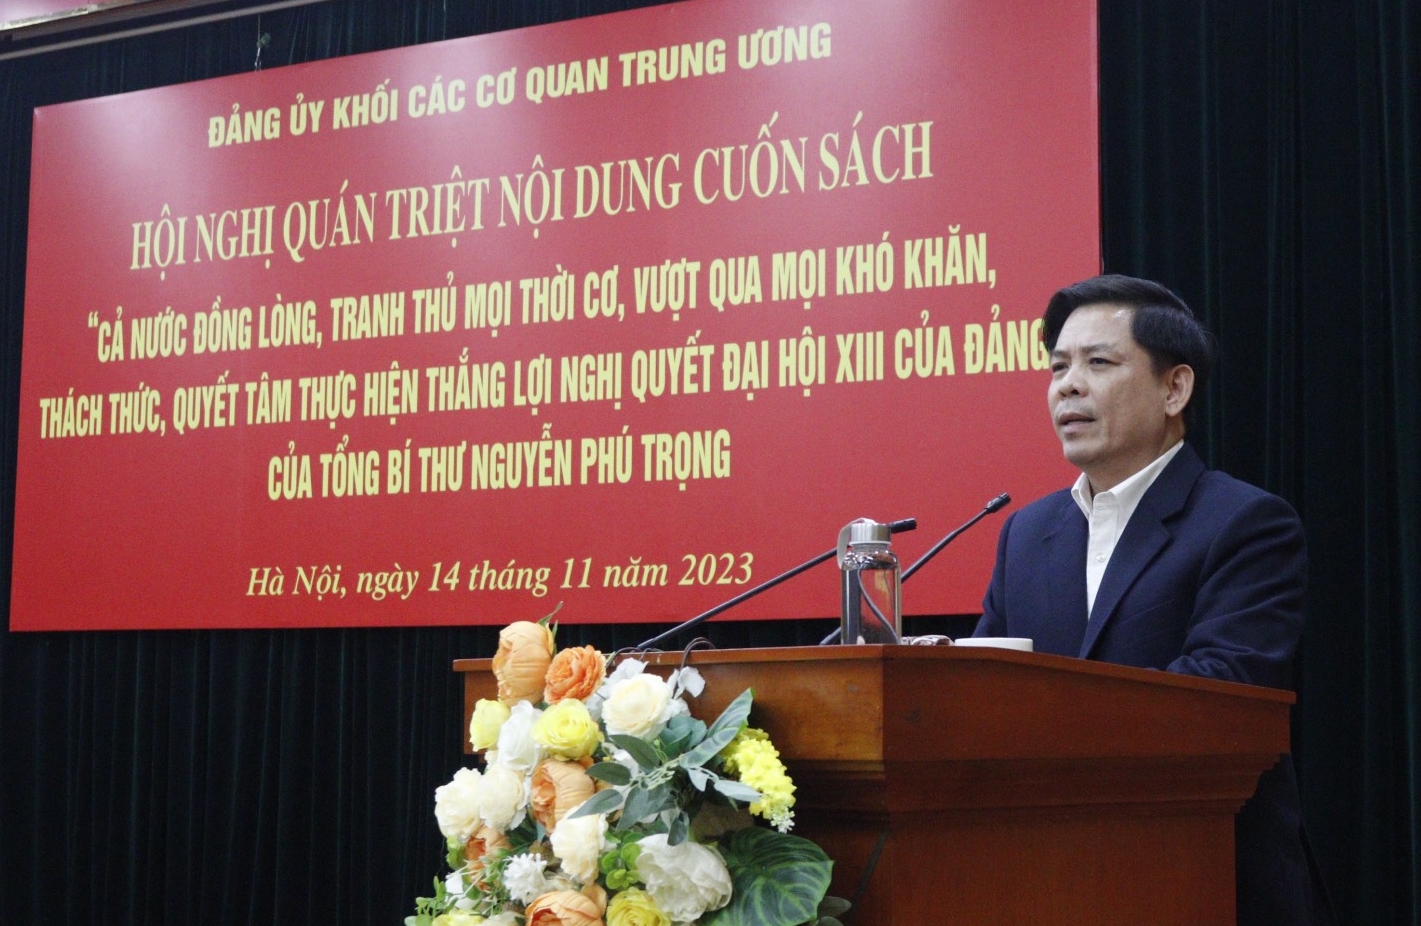 Đồng chí Nguyễn Văn Thể phát biểu chỉ đạo tại Hội nghị.